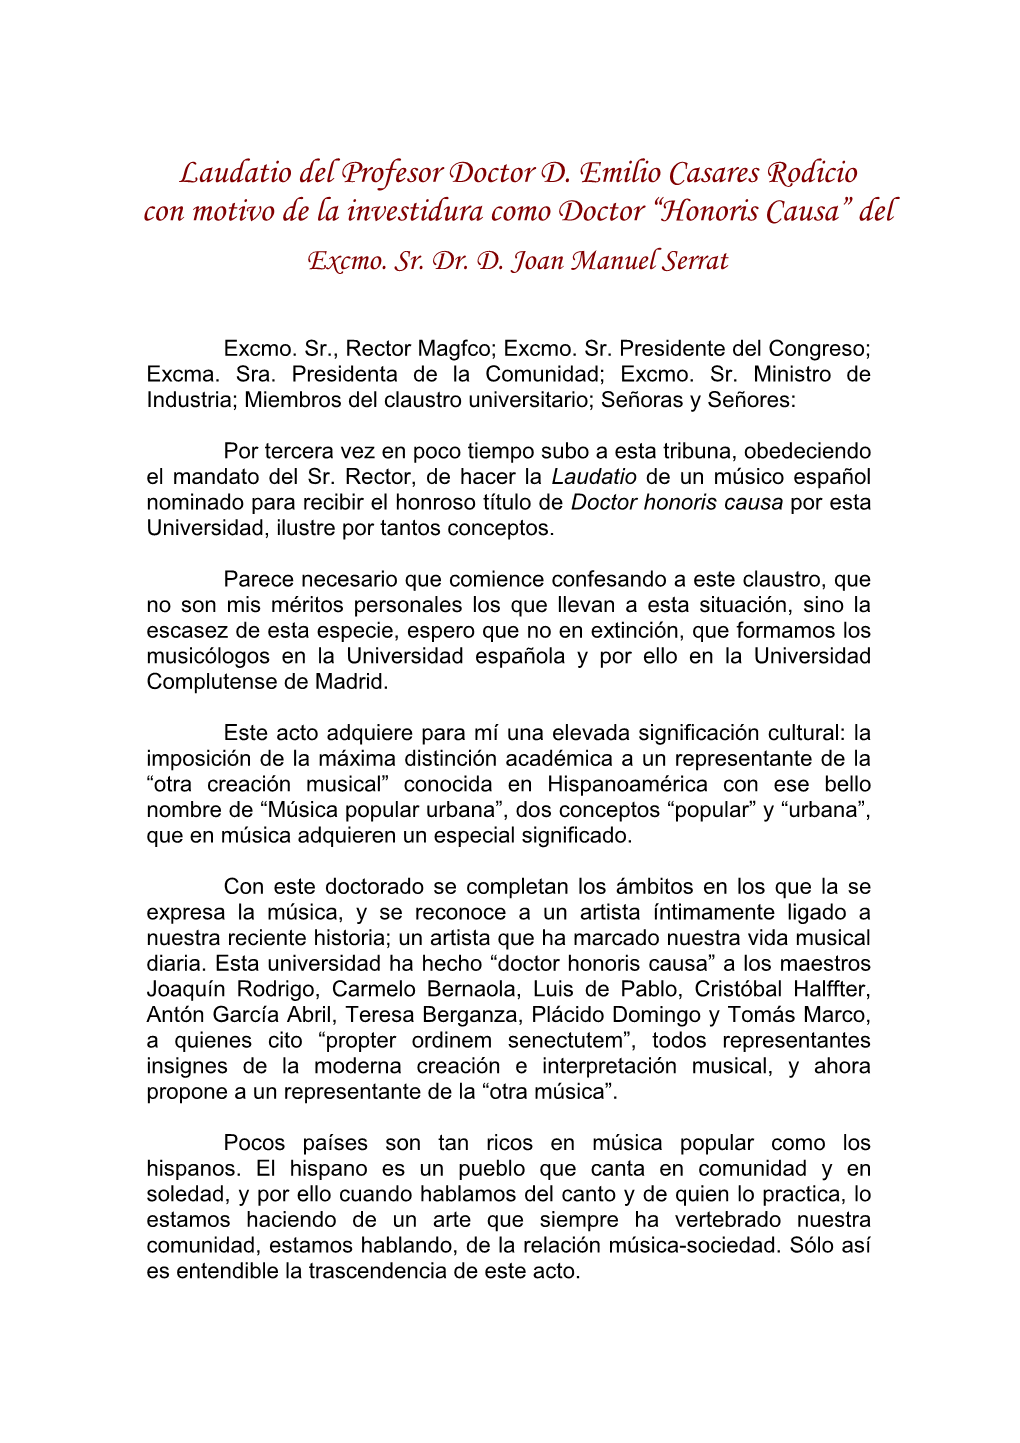 Eulogy by Prof. Emilio Casares Rodicio